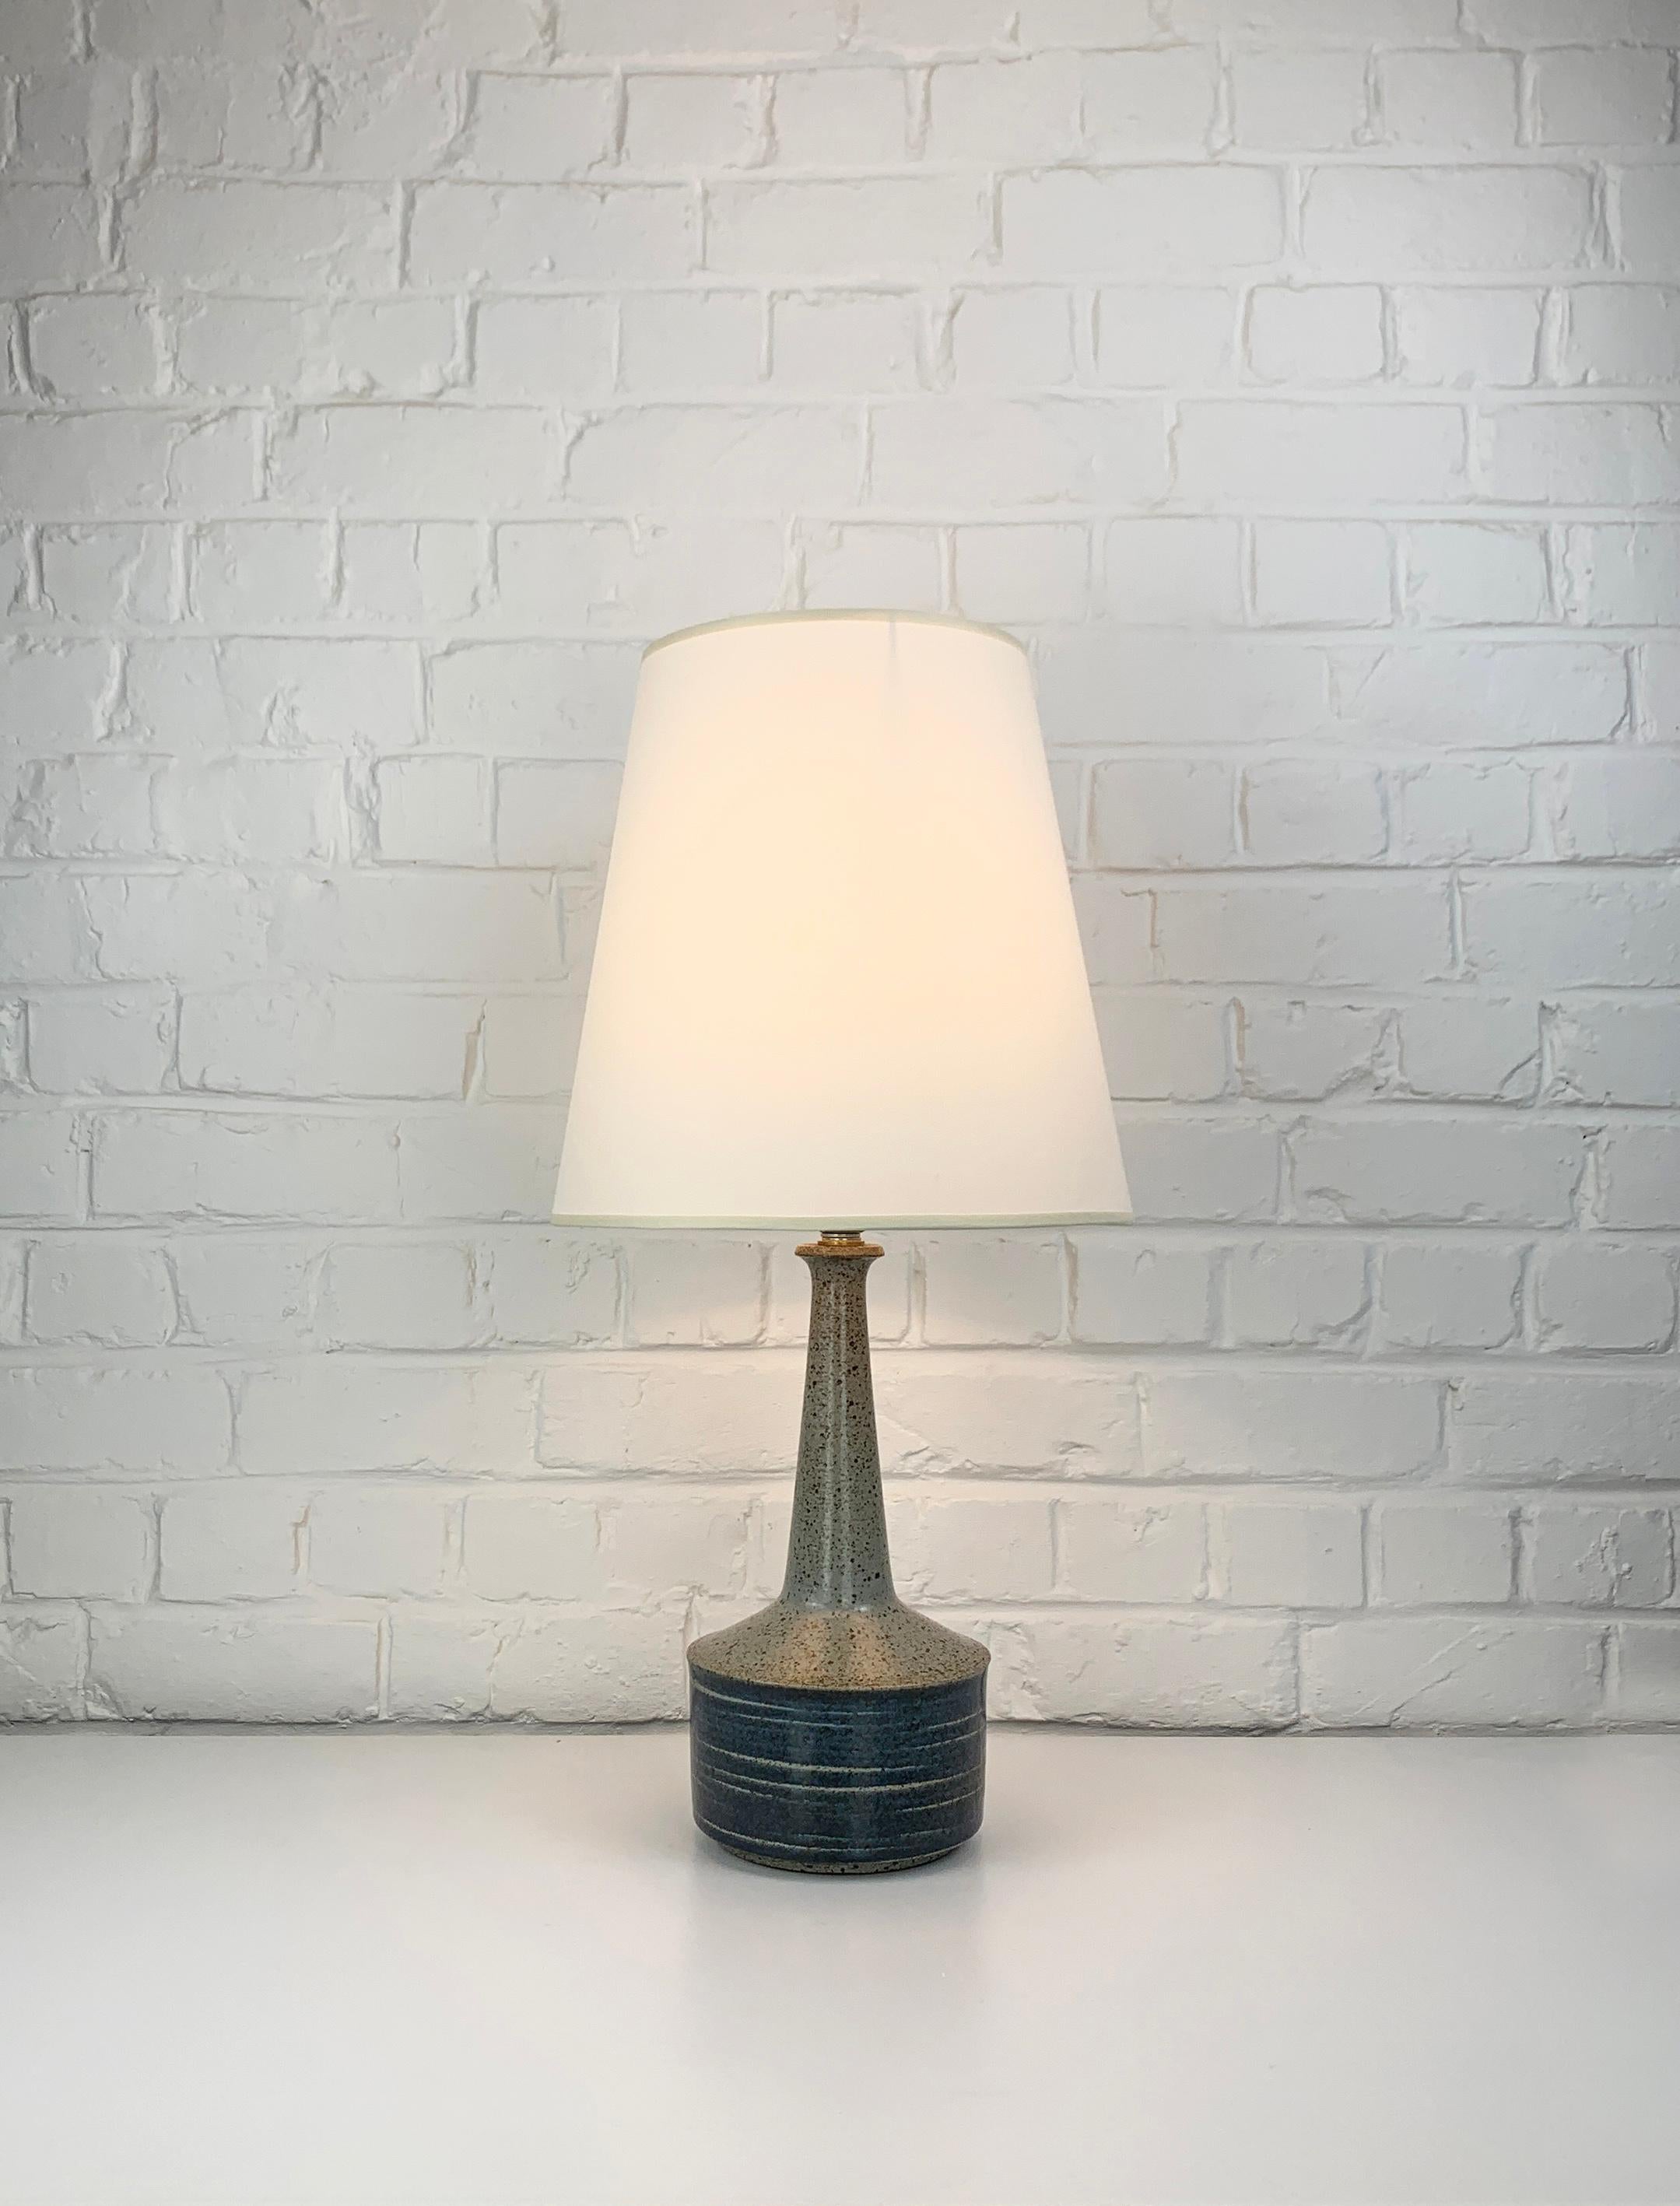 Lampe de table modèle DL44 produite par Palshus (Danemark). 

La base de la lampe est recouverte d'une glaçure bleue et grise. L'argile chamottée donne une surface naturelle et vivante. Il est signé sous la base (PLS pour Per